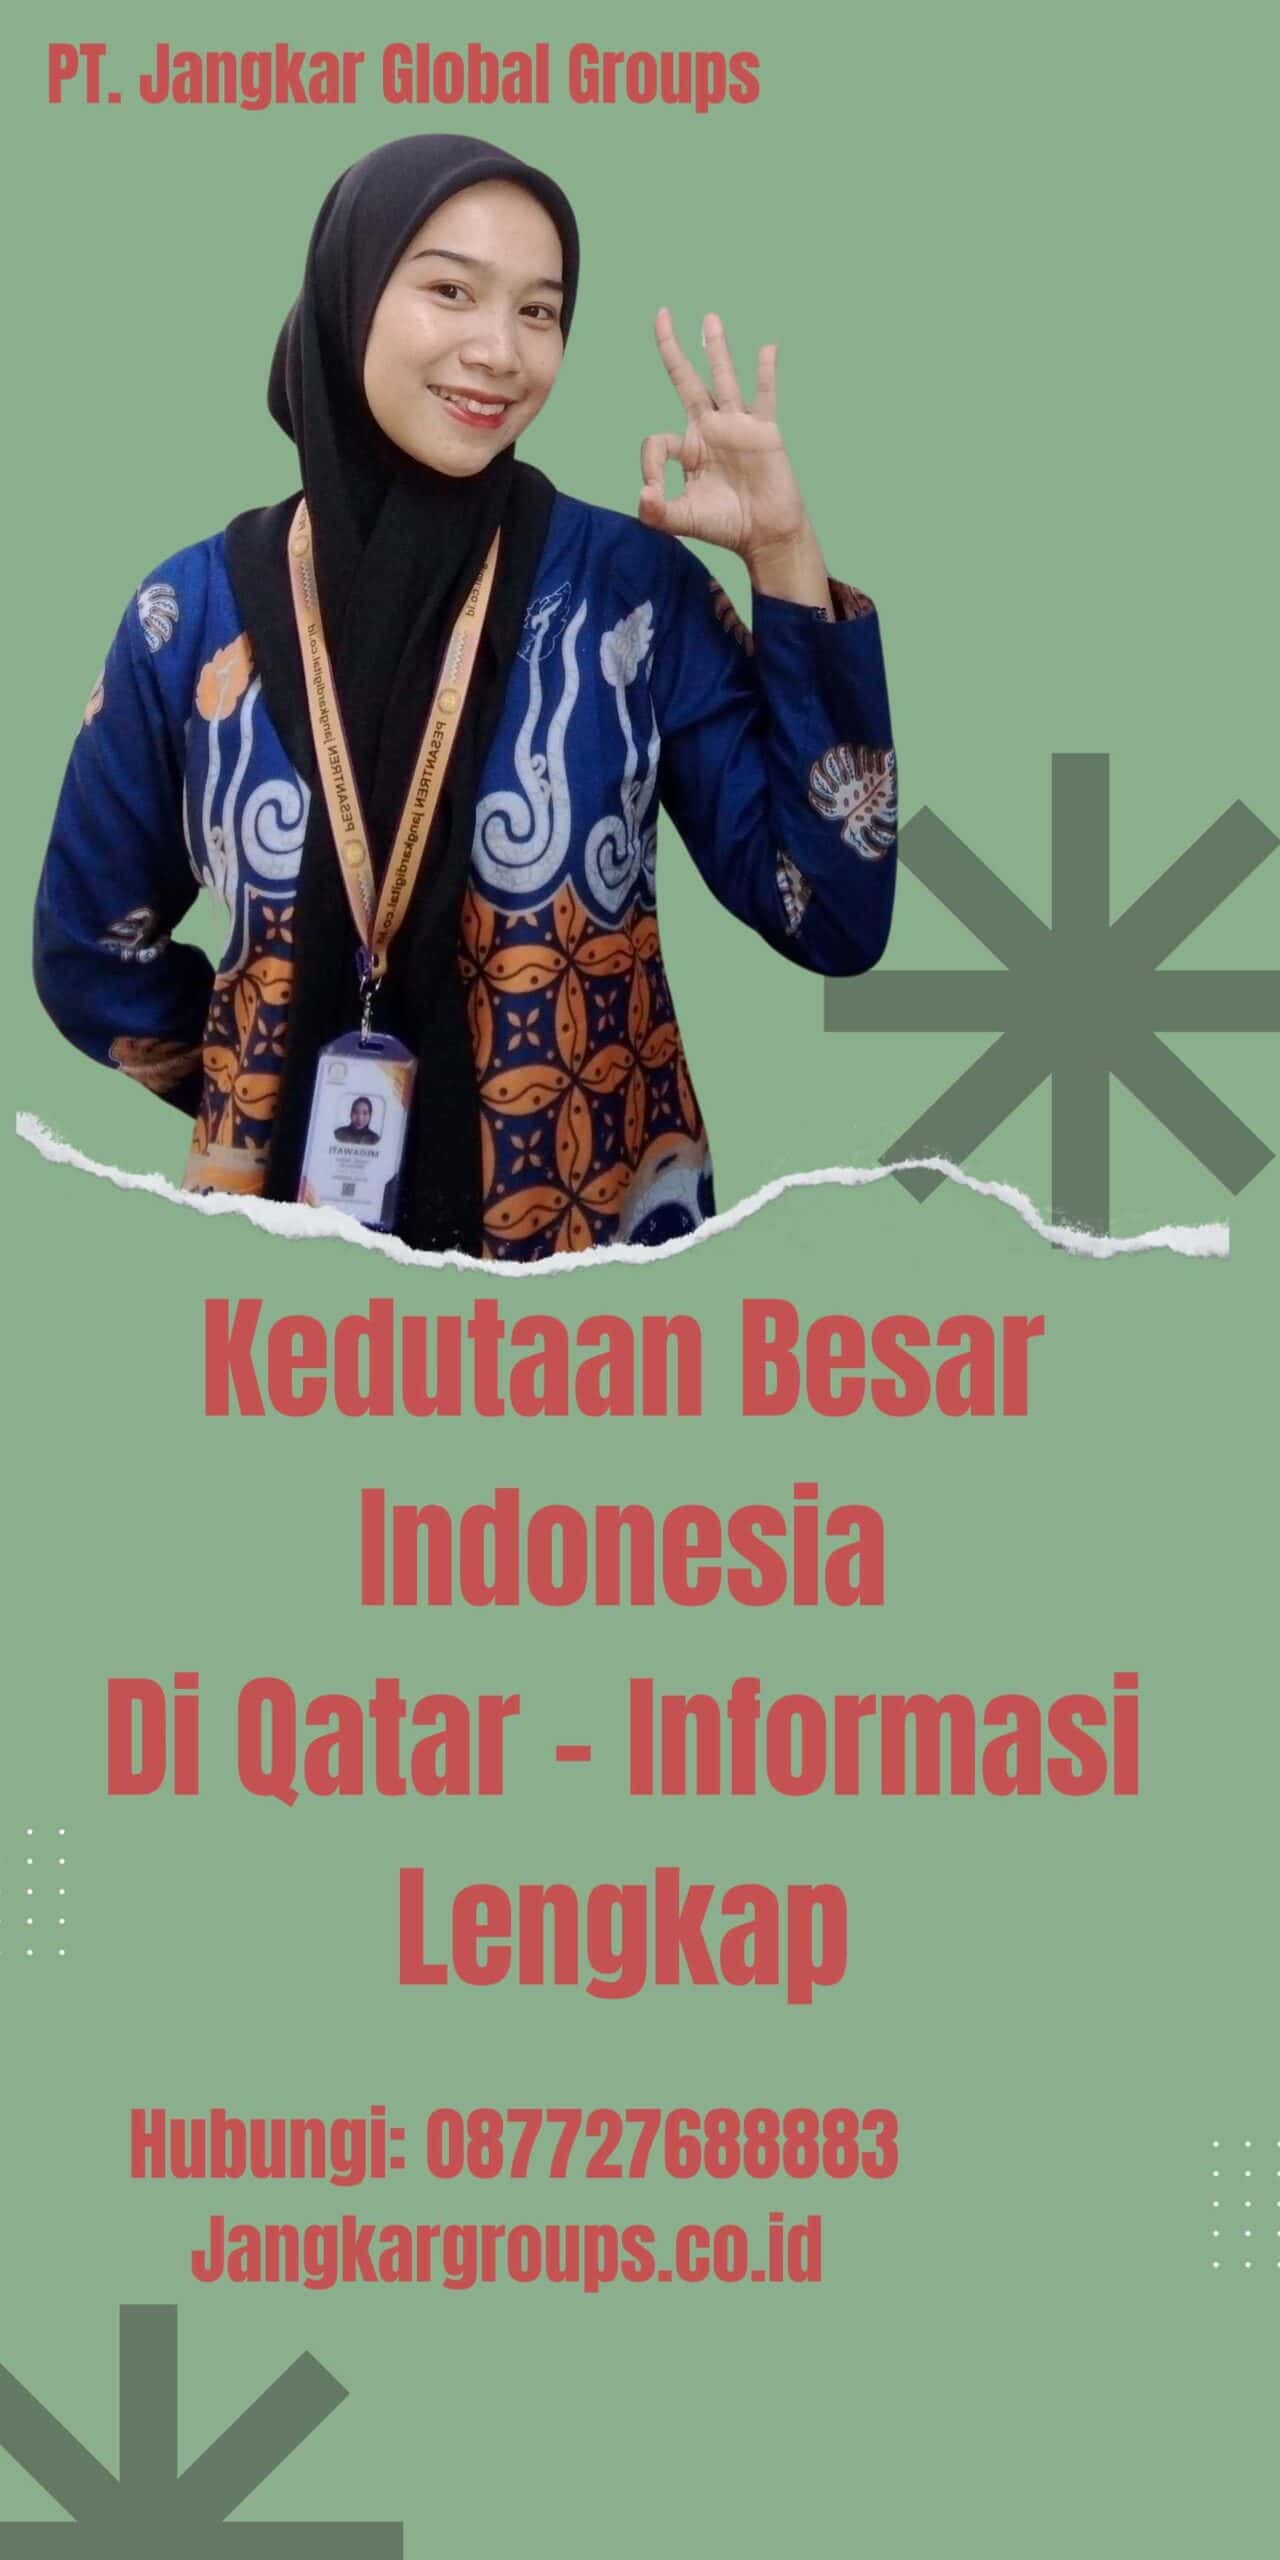 Kedutaan Besar Indonesia Di Qatar - Informasi Lengkap